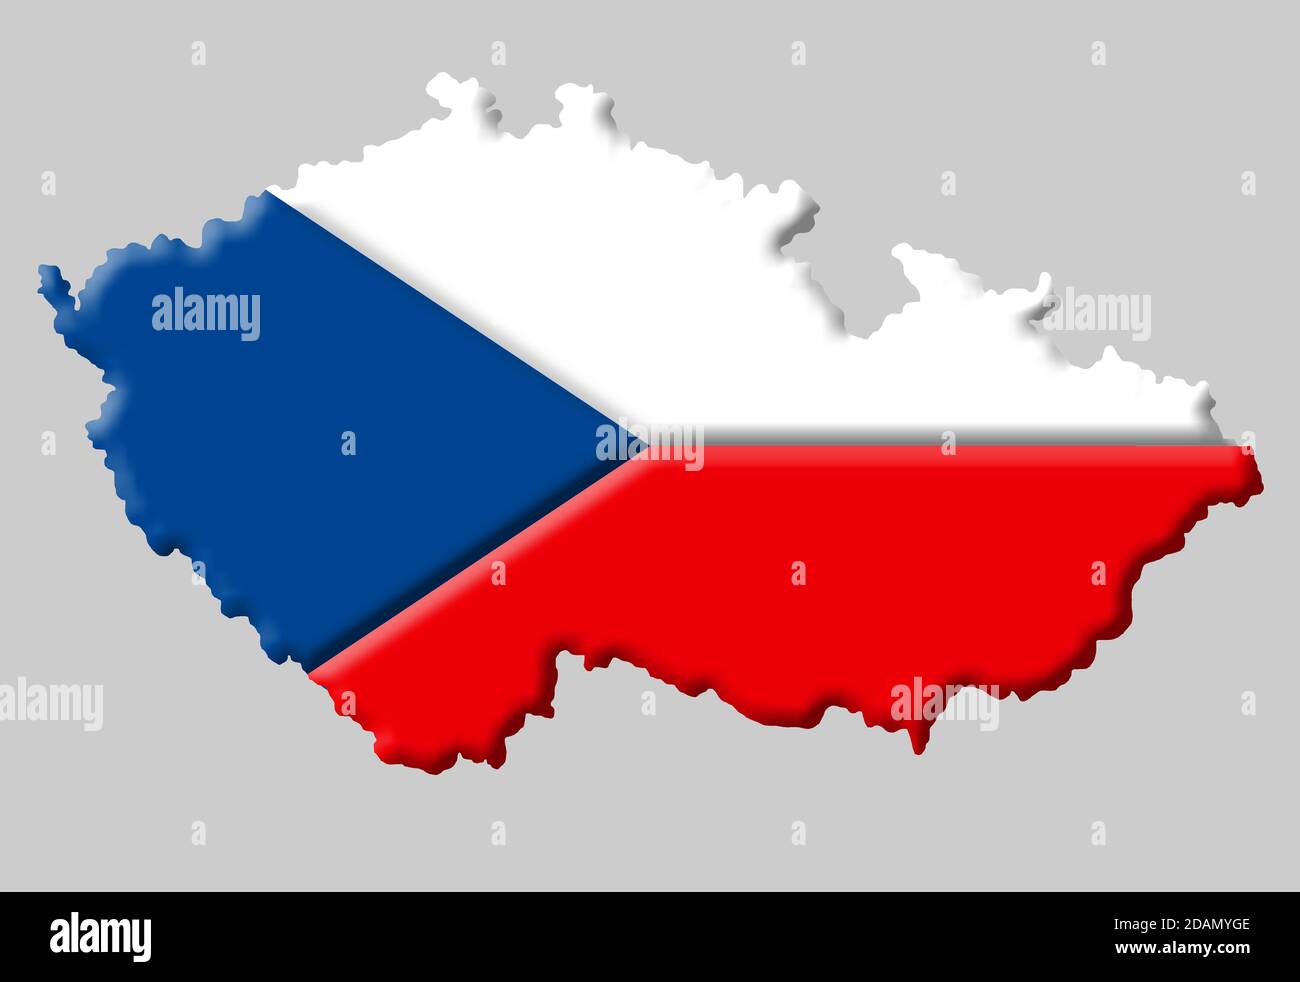 Carte 3D de la Tchéquie / République Tchèque avec les couleurs de Le drapeau national tchèque Banque D'Images